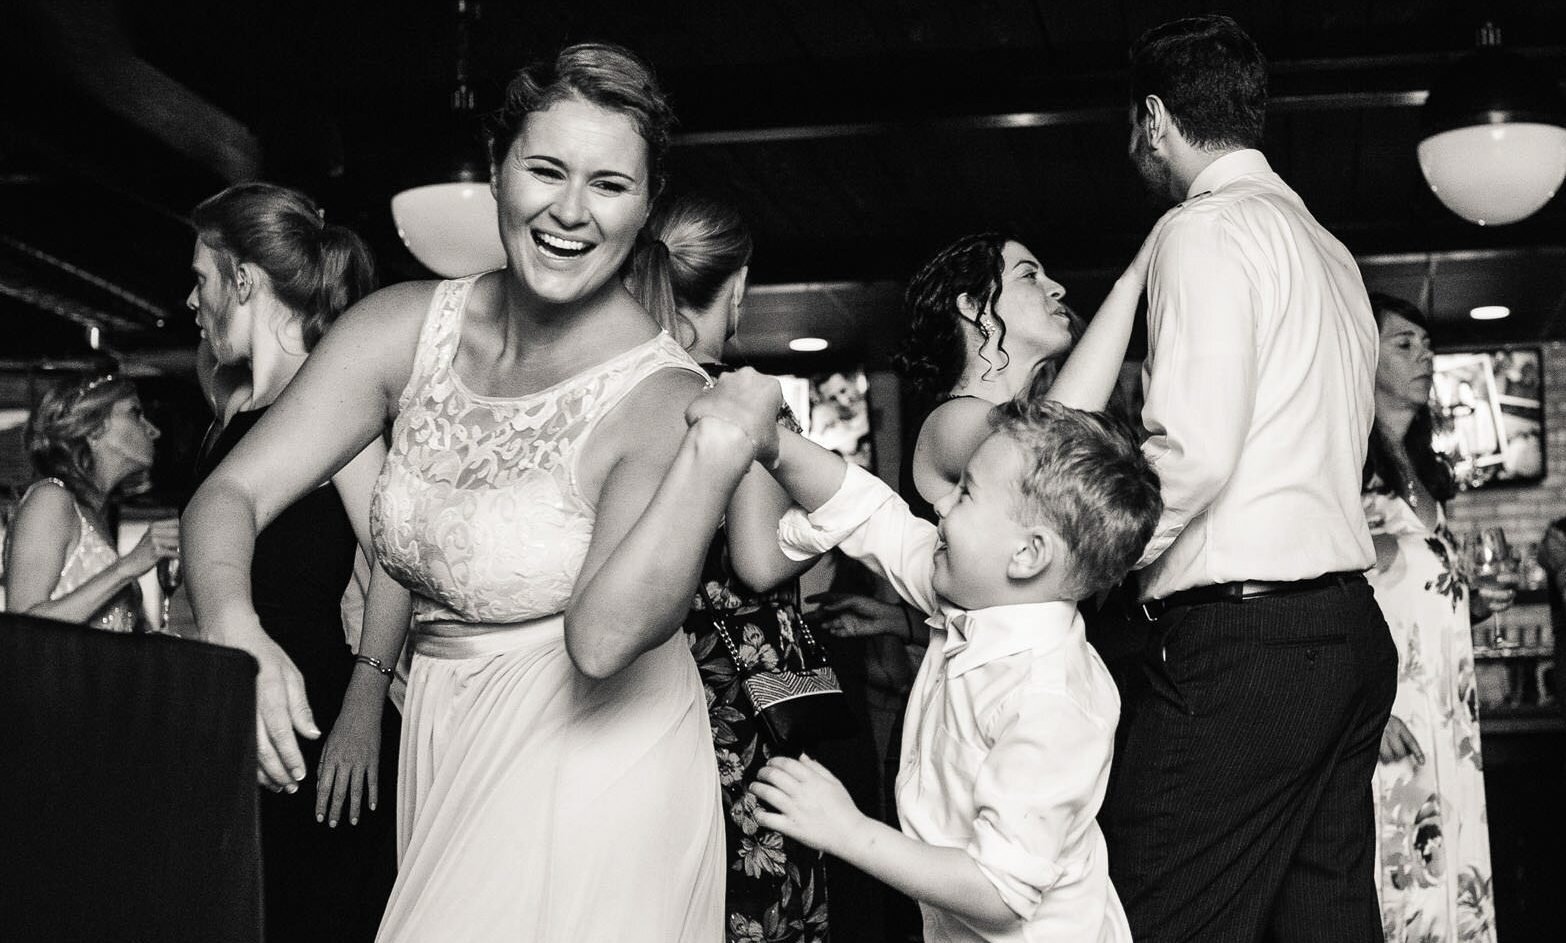 mom-dancing-young-son-wedding-reception-blackwall-hitch.jpg